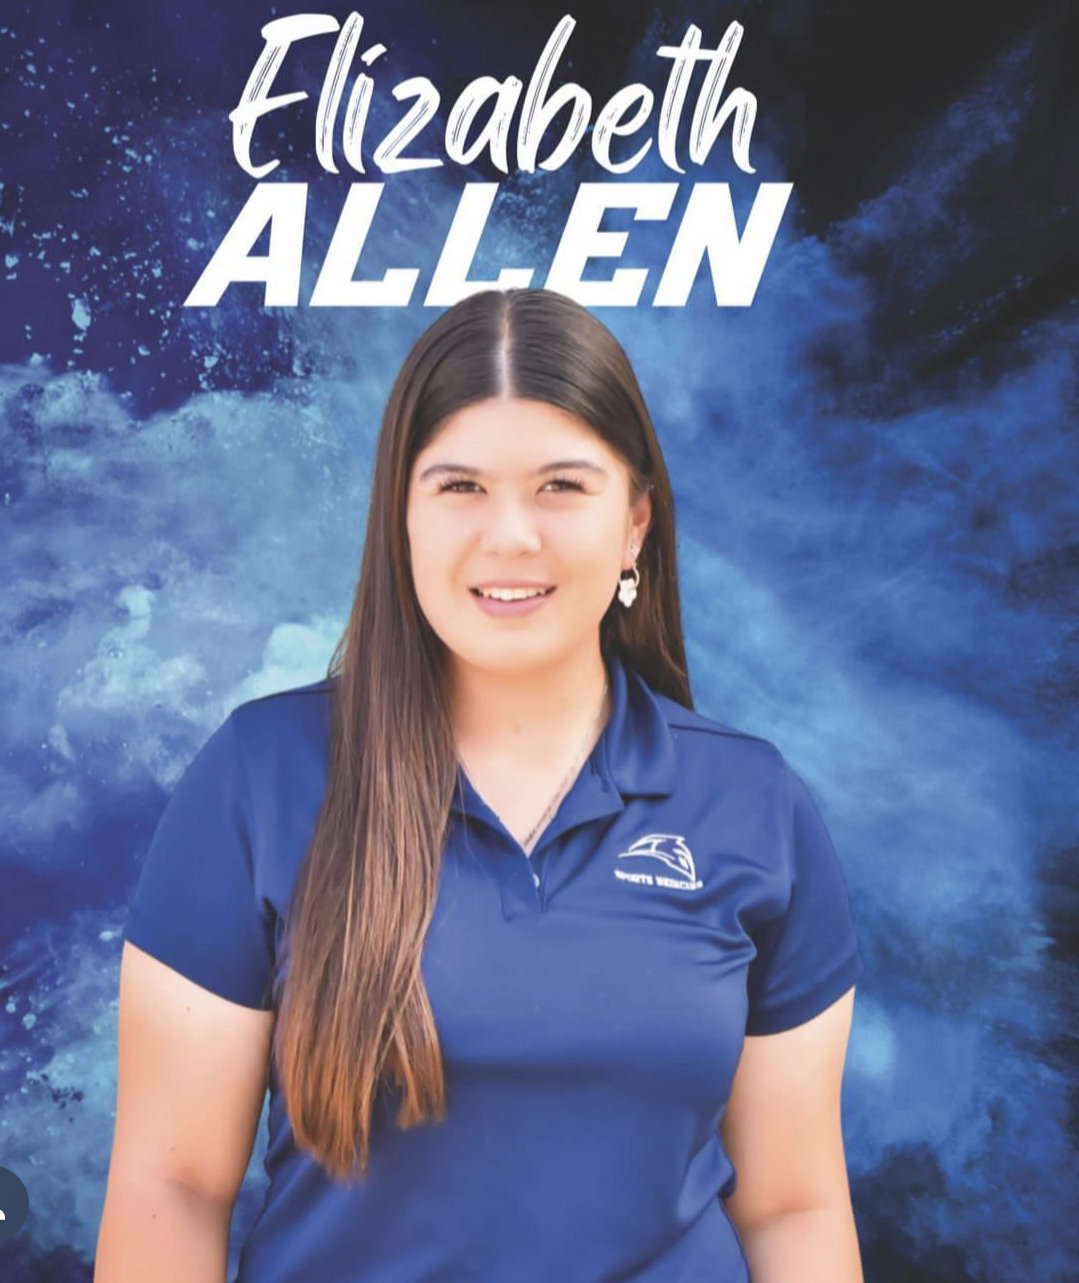 Senior trainer Elizabeth Allen headshot for trainer card.